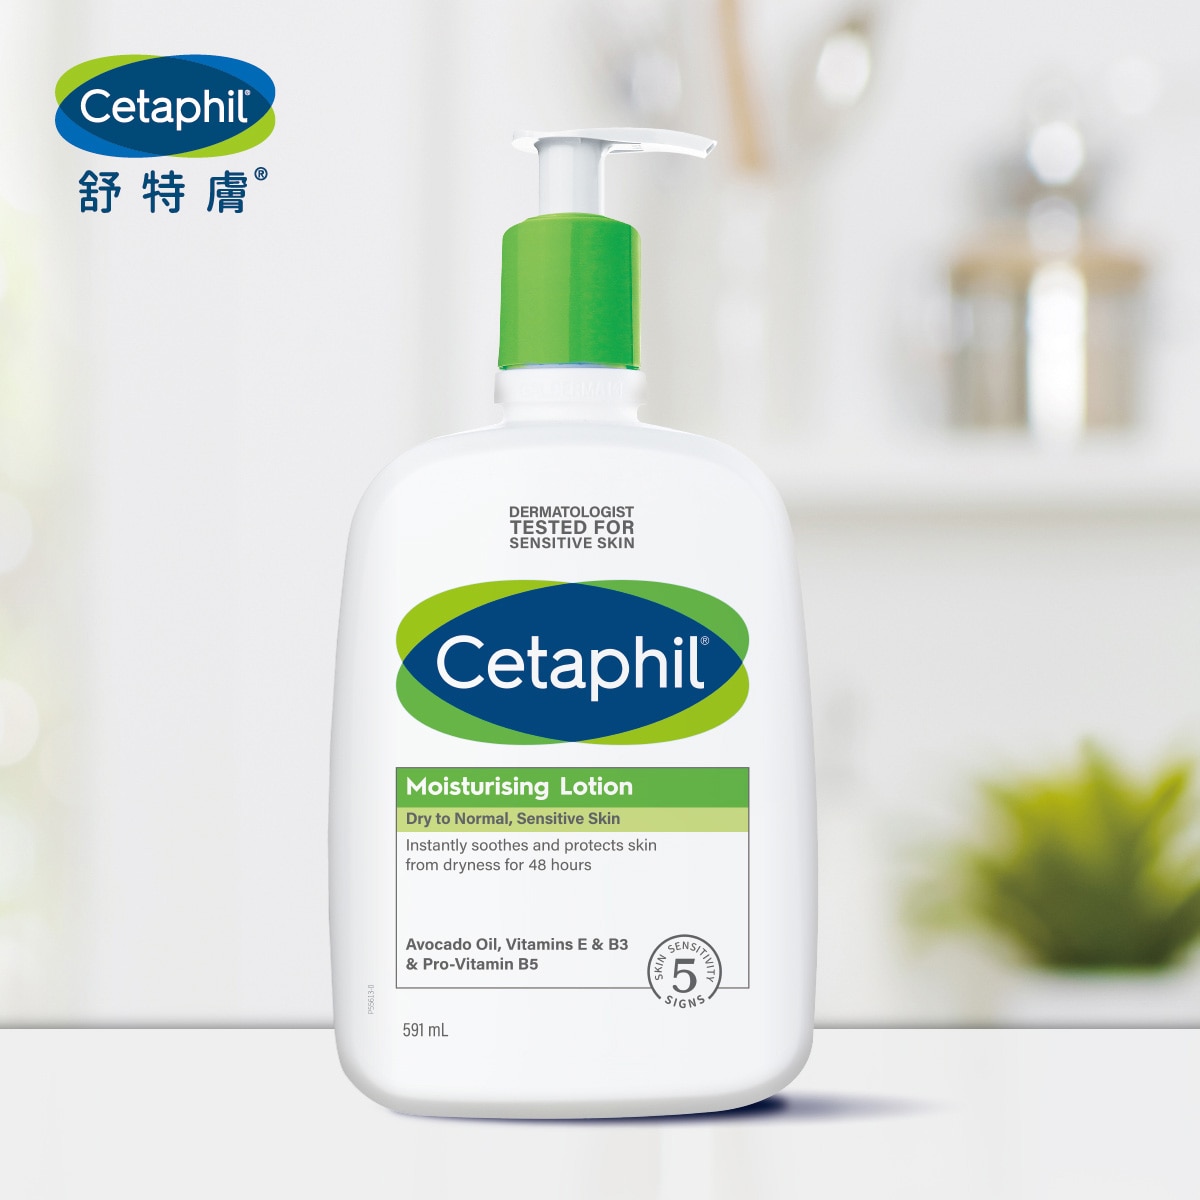 Cetaphil 舒特膚長效潤膚乳內有酪梨油、維他命B3、B5、E，能有效地為肌膚長效保濕。無添加酒精、香精等，低敏配方，敏弱肌也能使用。